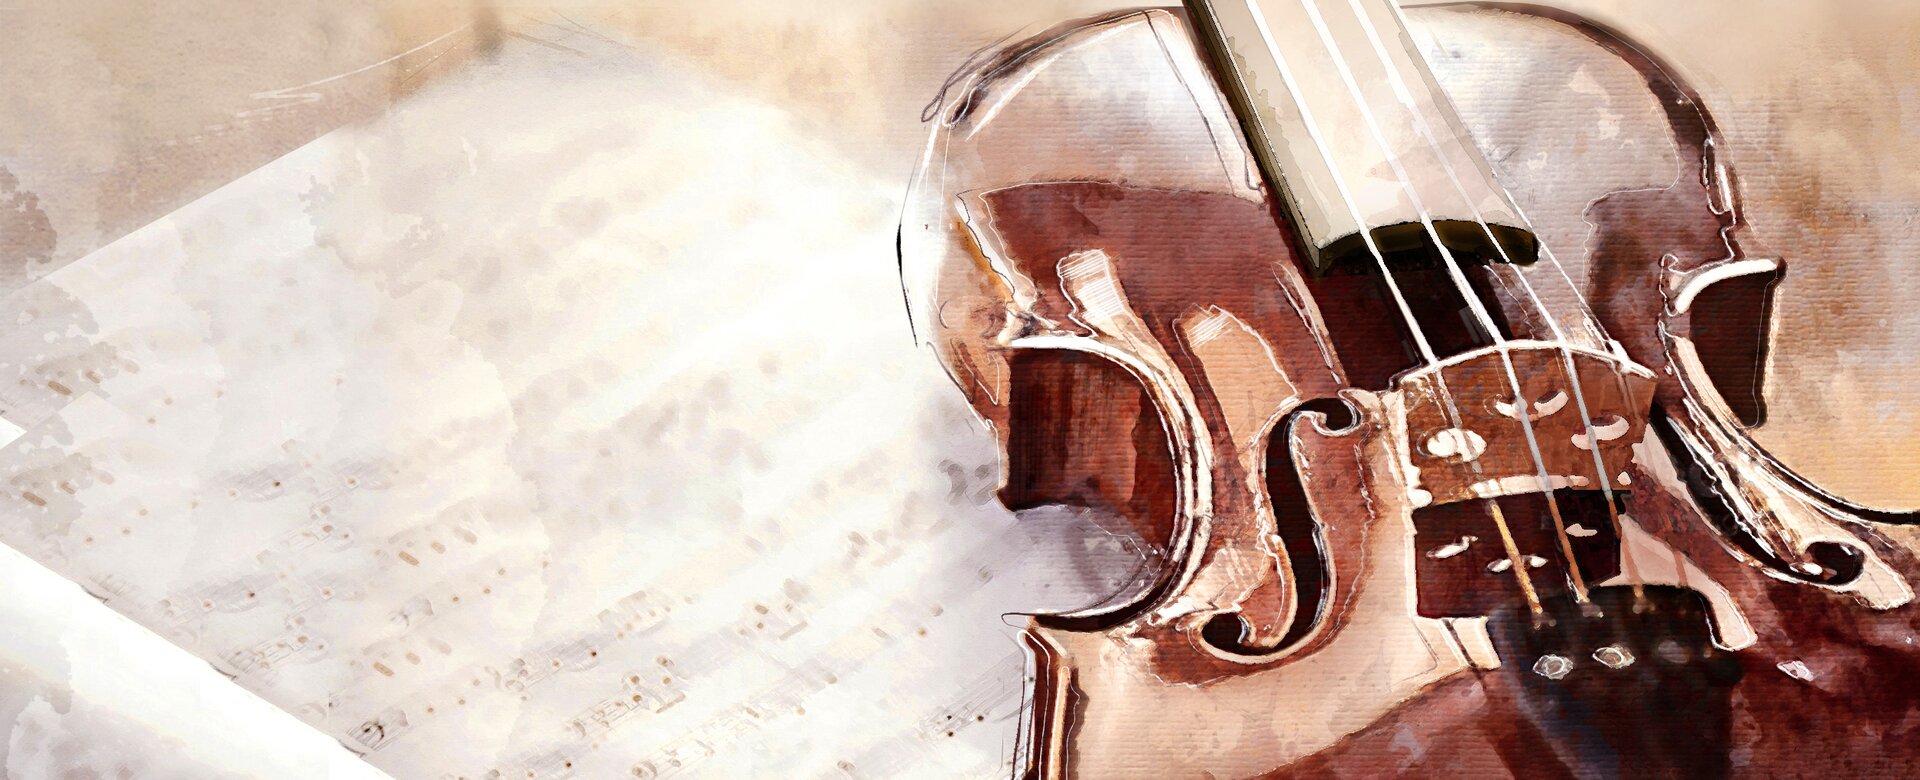 Gezeichnetes Bild zeigt eine Geige, welche auf einem Notenblatt liegt